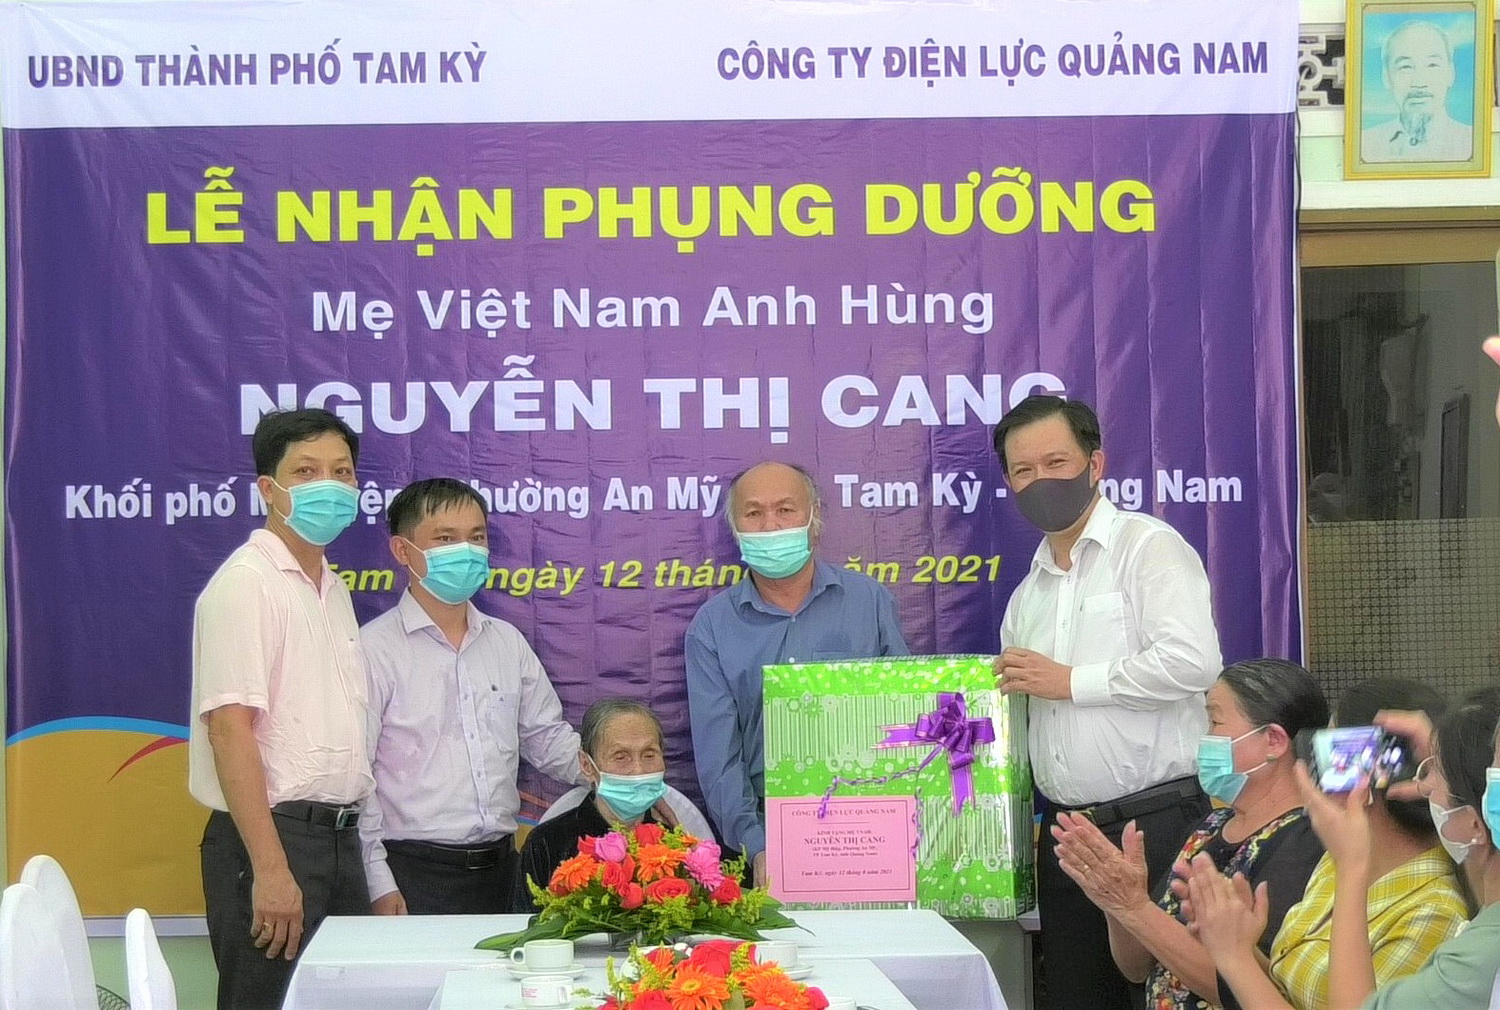 Công ty Điện lực Quảng Nam trao tiền phụng dưỡng hàng tháng cho Mẹ Nguyễn Thị Cang.